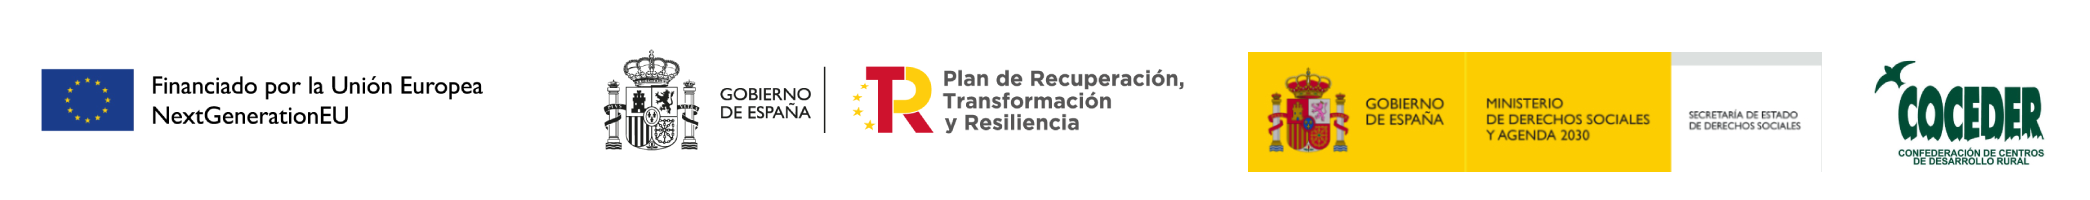 Logo Fondos Next Generation EU |Gobierno de España|Plan de Recuperación, Transformación y Resiliencia| Ministerio de Derechos Sociales y Agenda 2030|Coceder